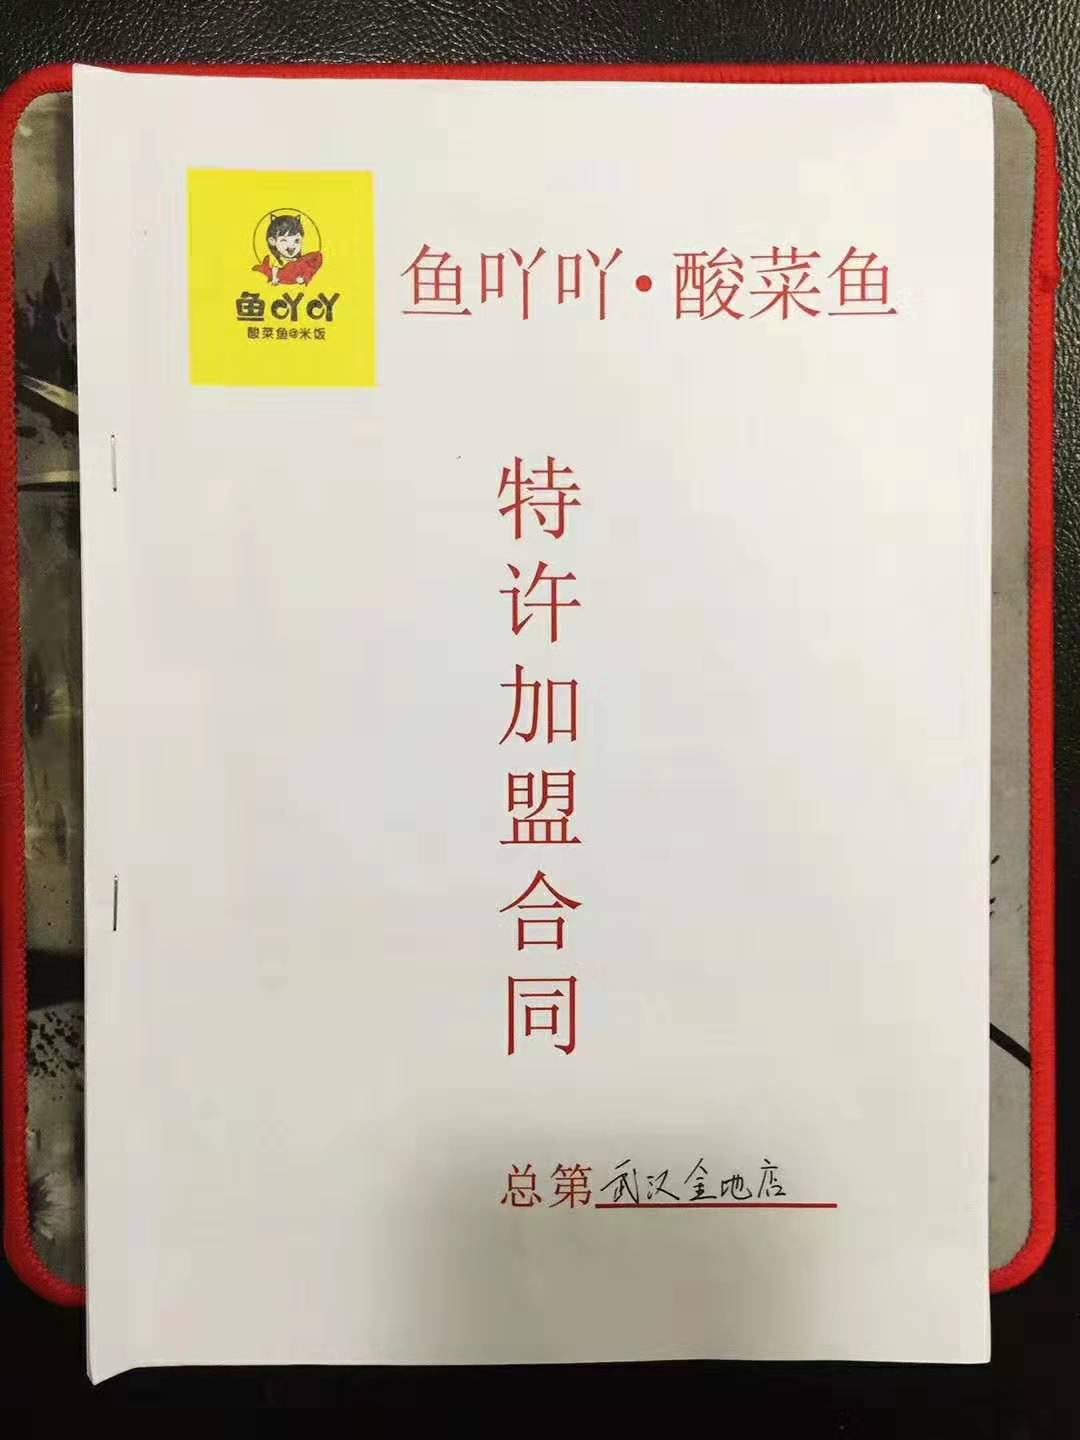 恭贺鱼吖吖酸菜鱼@米饭在武汉签订第十二店！